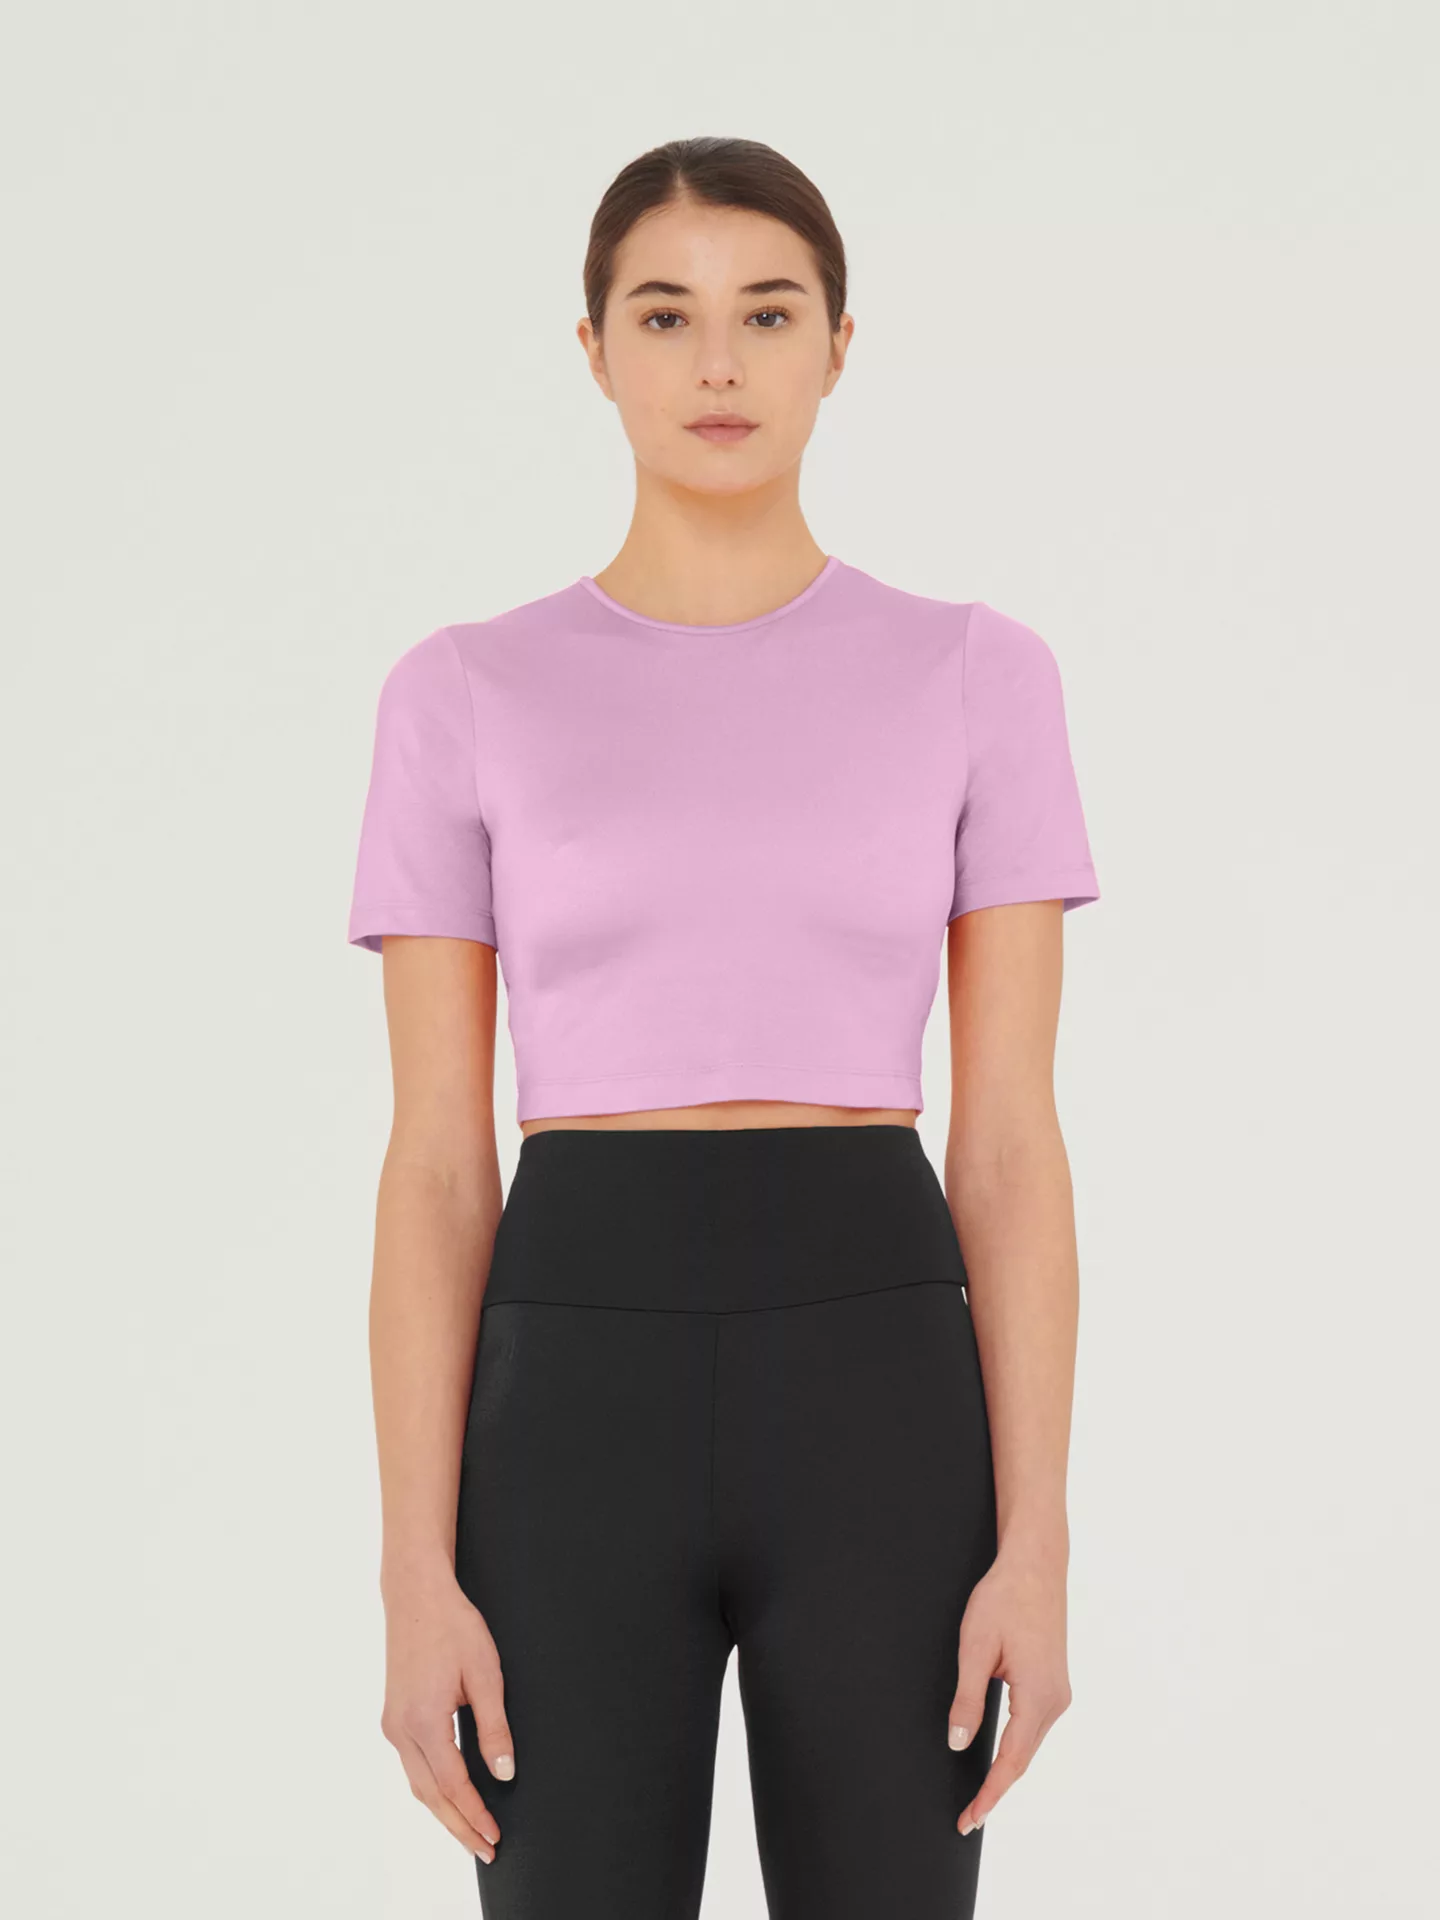 Wolford - The Workout Top Short Sleeves, Frau, prisma pink, Größe: XS günstig online kaufen